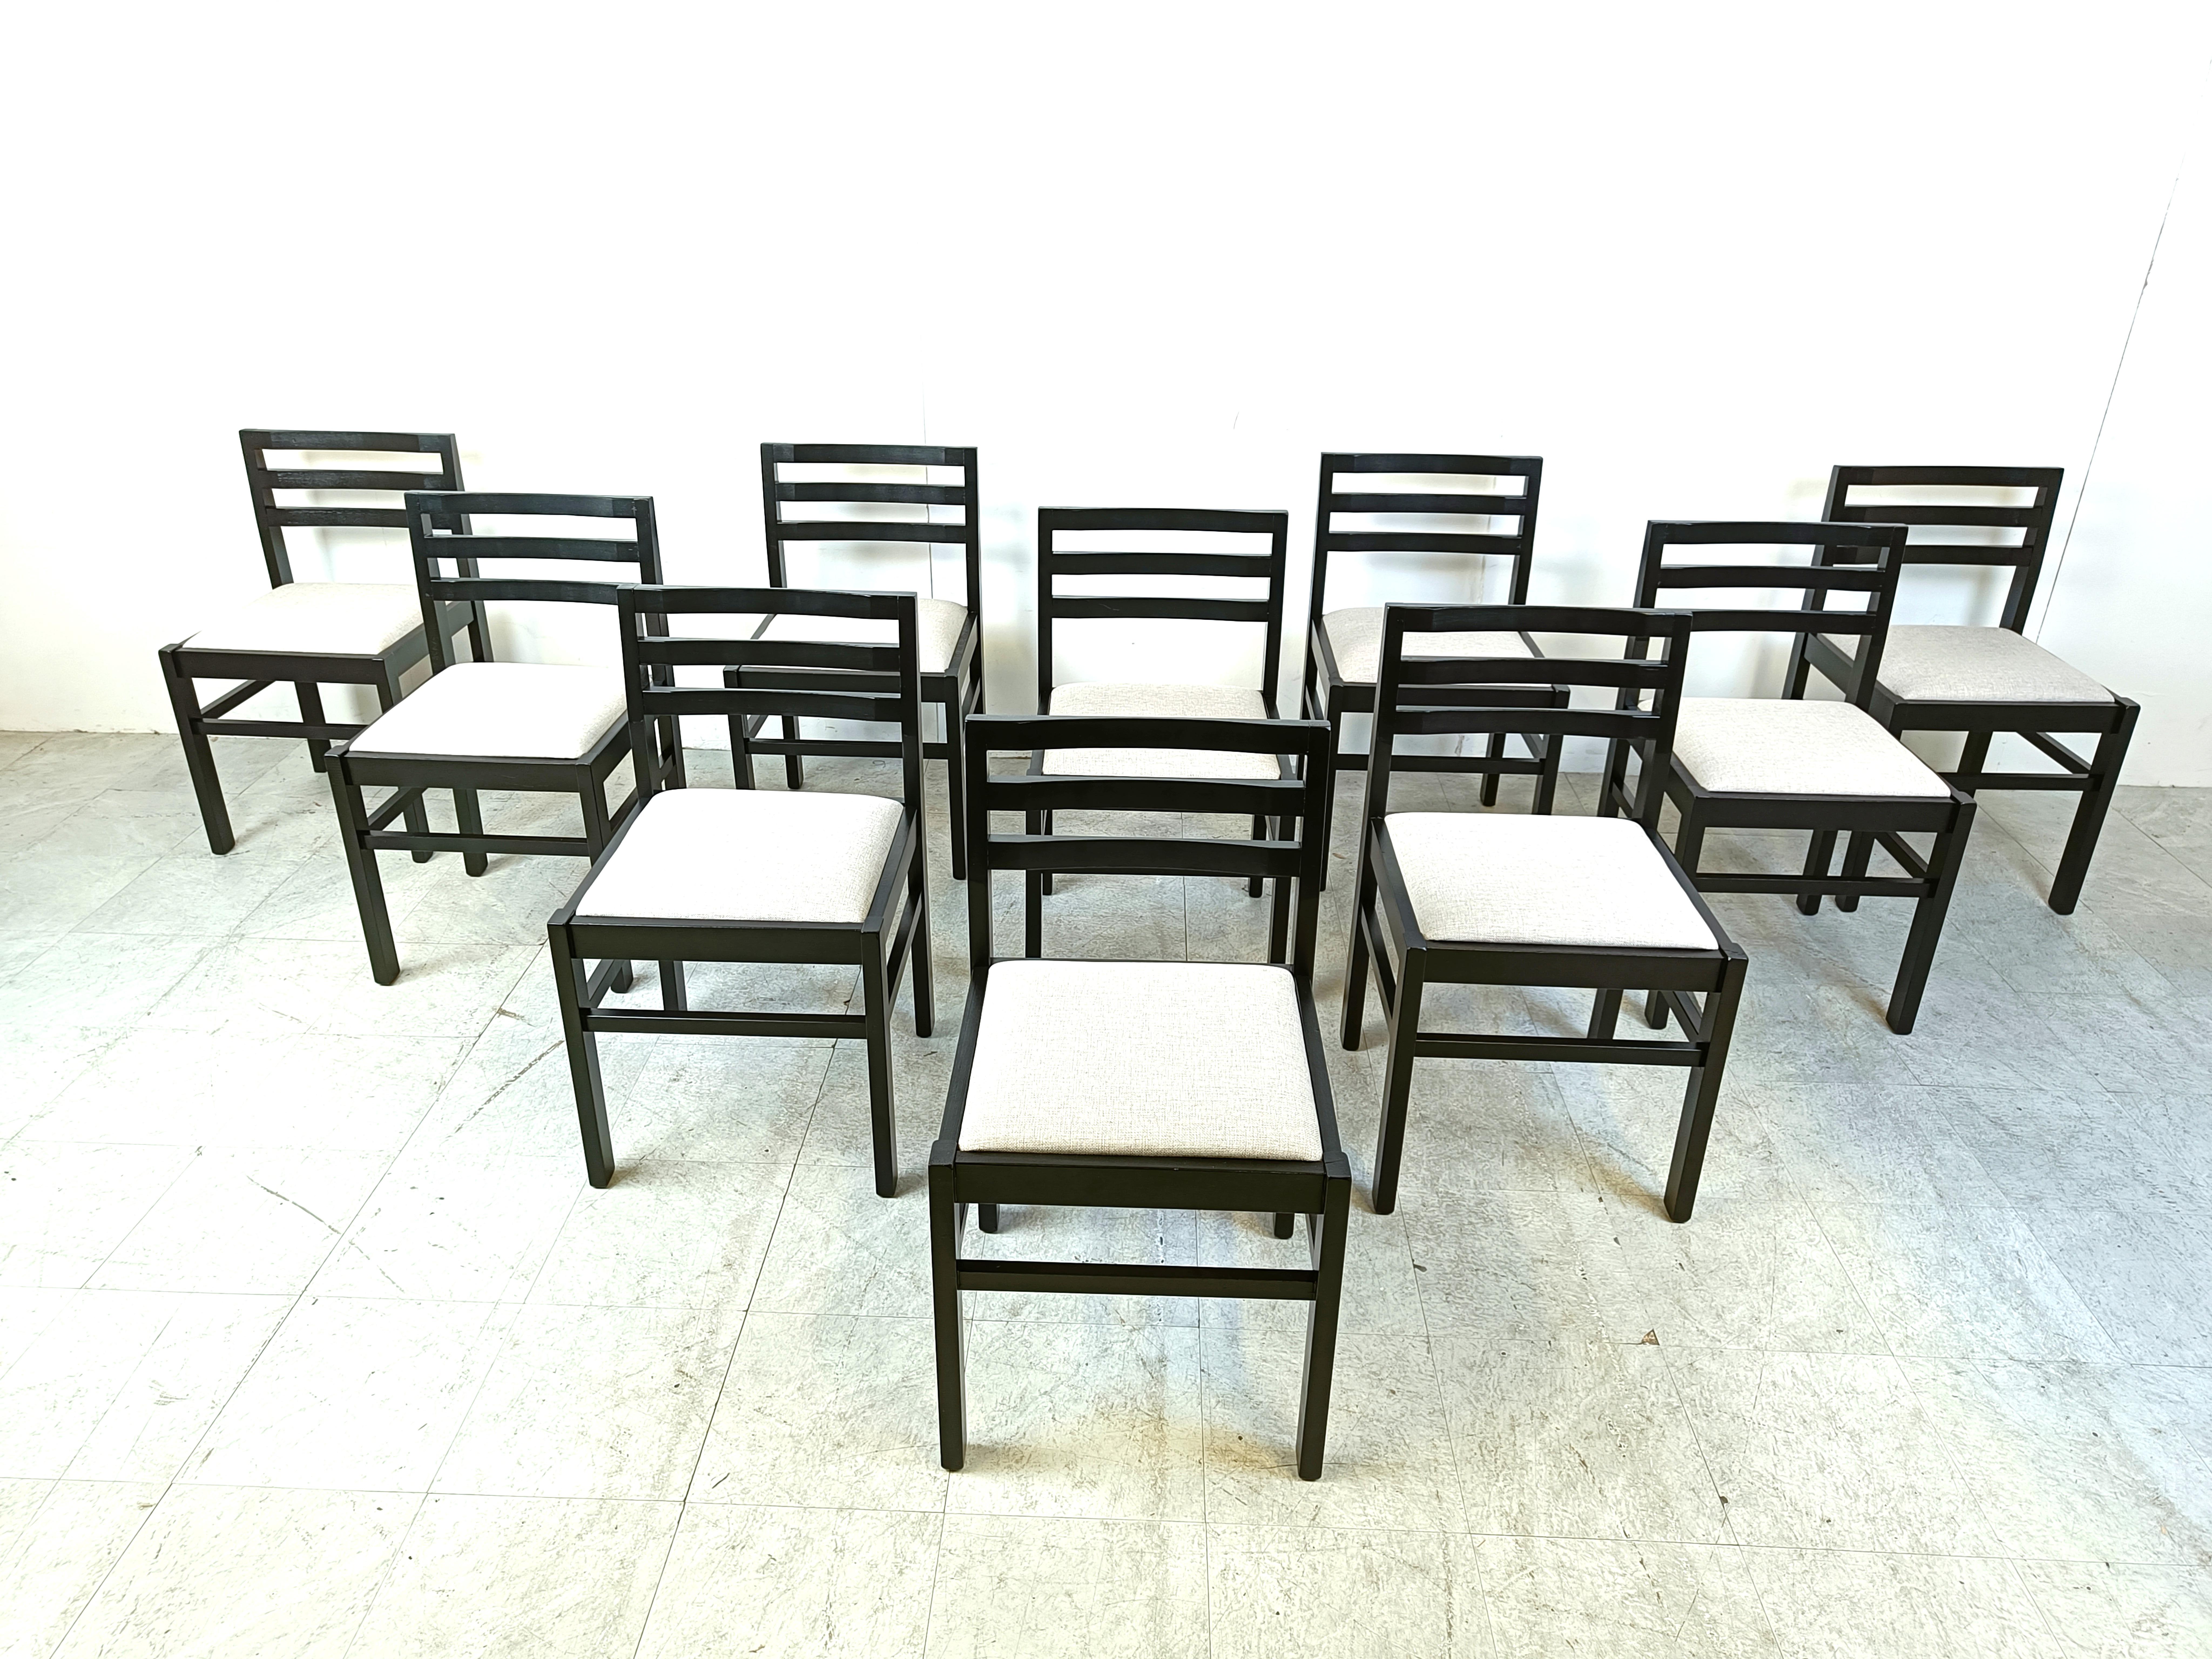 Chaises de salle à manger brutalistes du milieu du siècle avec des cadres en bois noir et des sièges en tissu gris clair.

Chaises très robustes avec un beau design.

Très bon état.

Années 1970 - Allemagne

Dimensions :
Hauteur : 80cm
Hauteur du